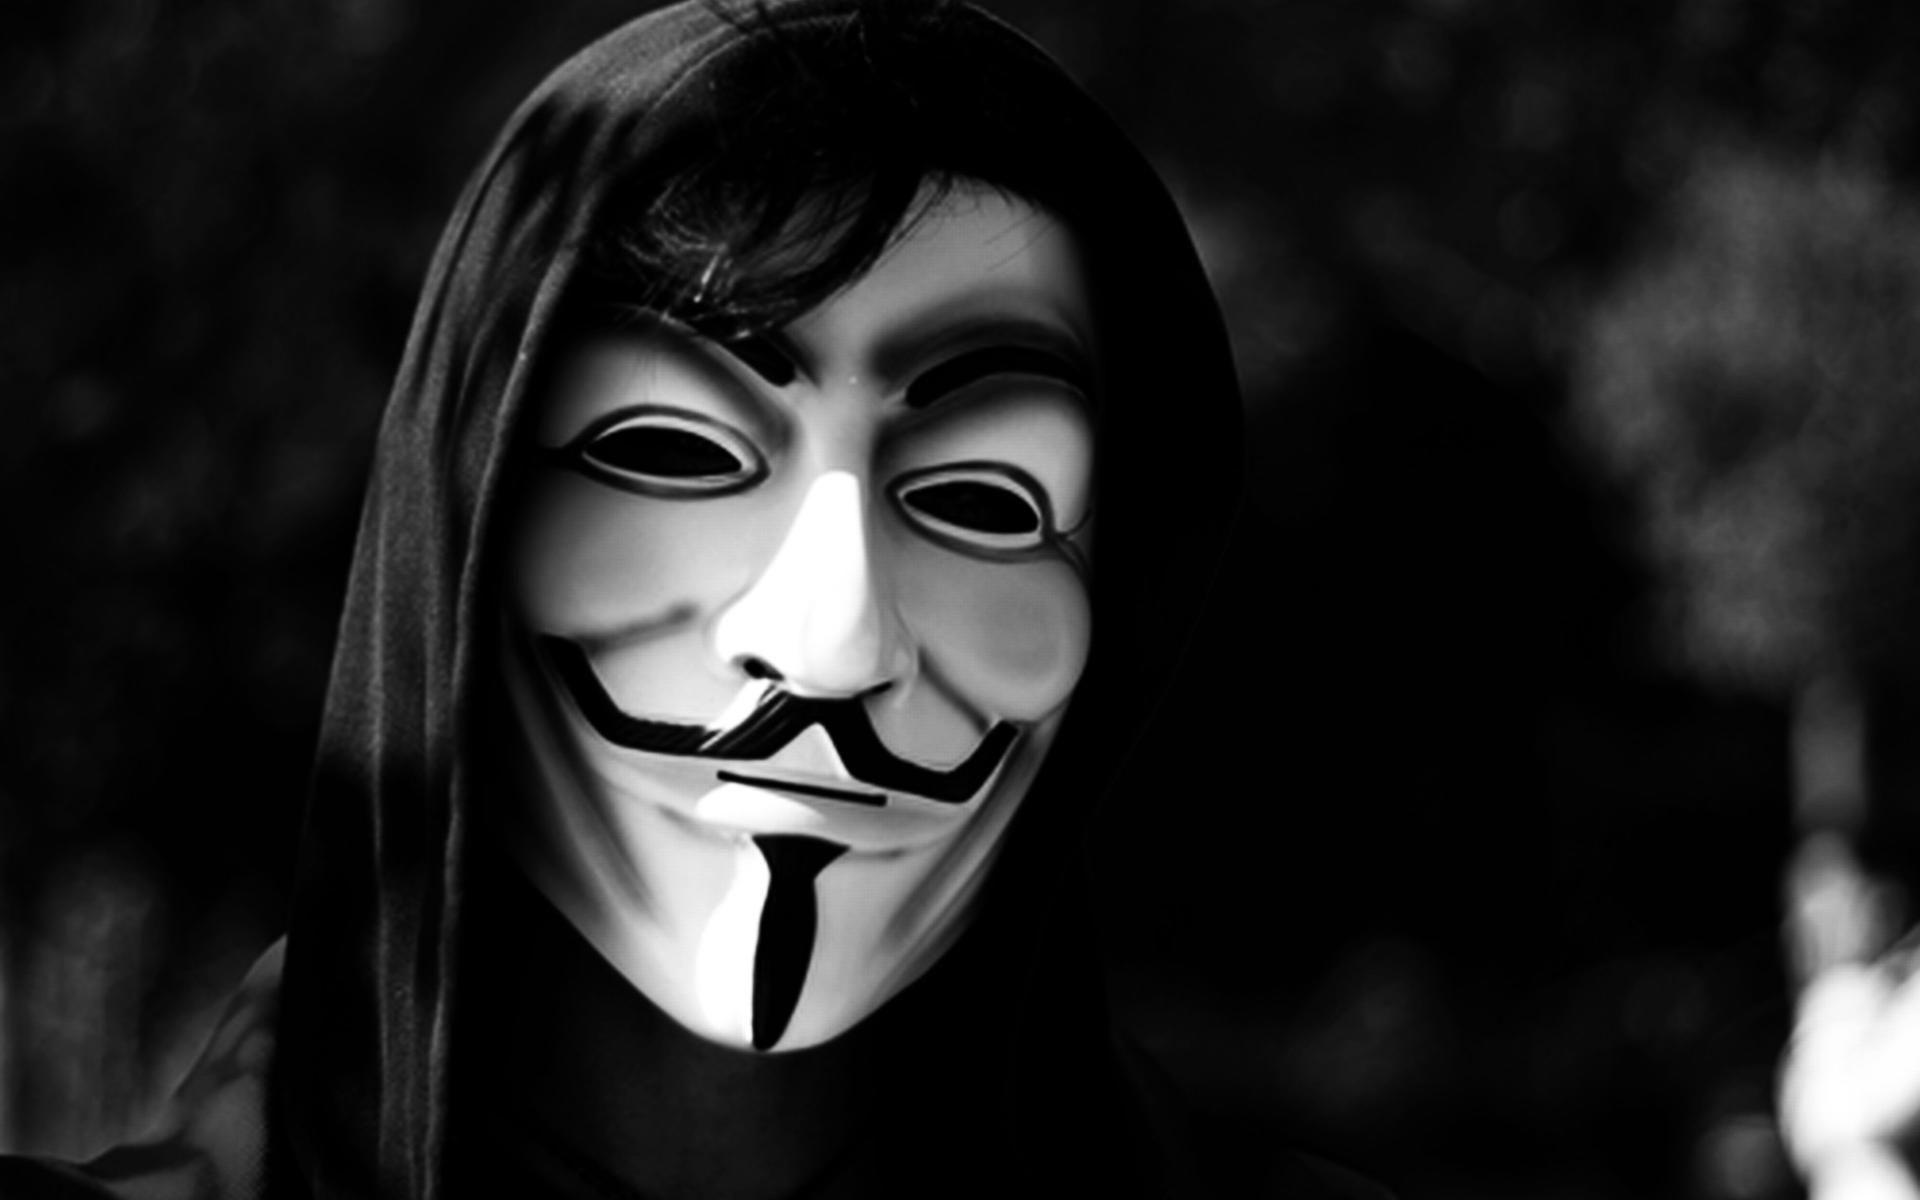 Anonymous v for vendetta masks monochrome wallpaper